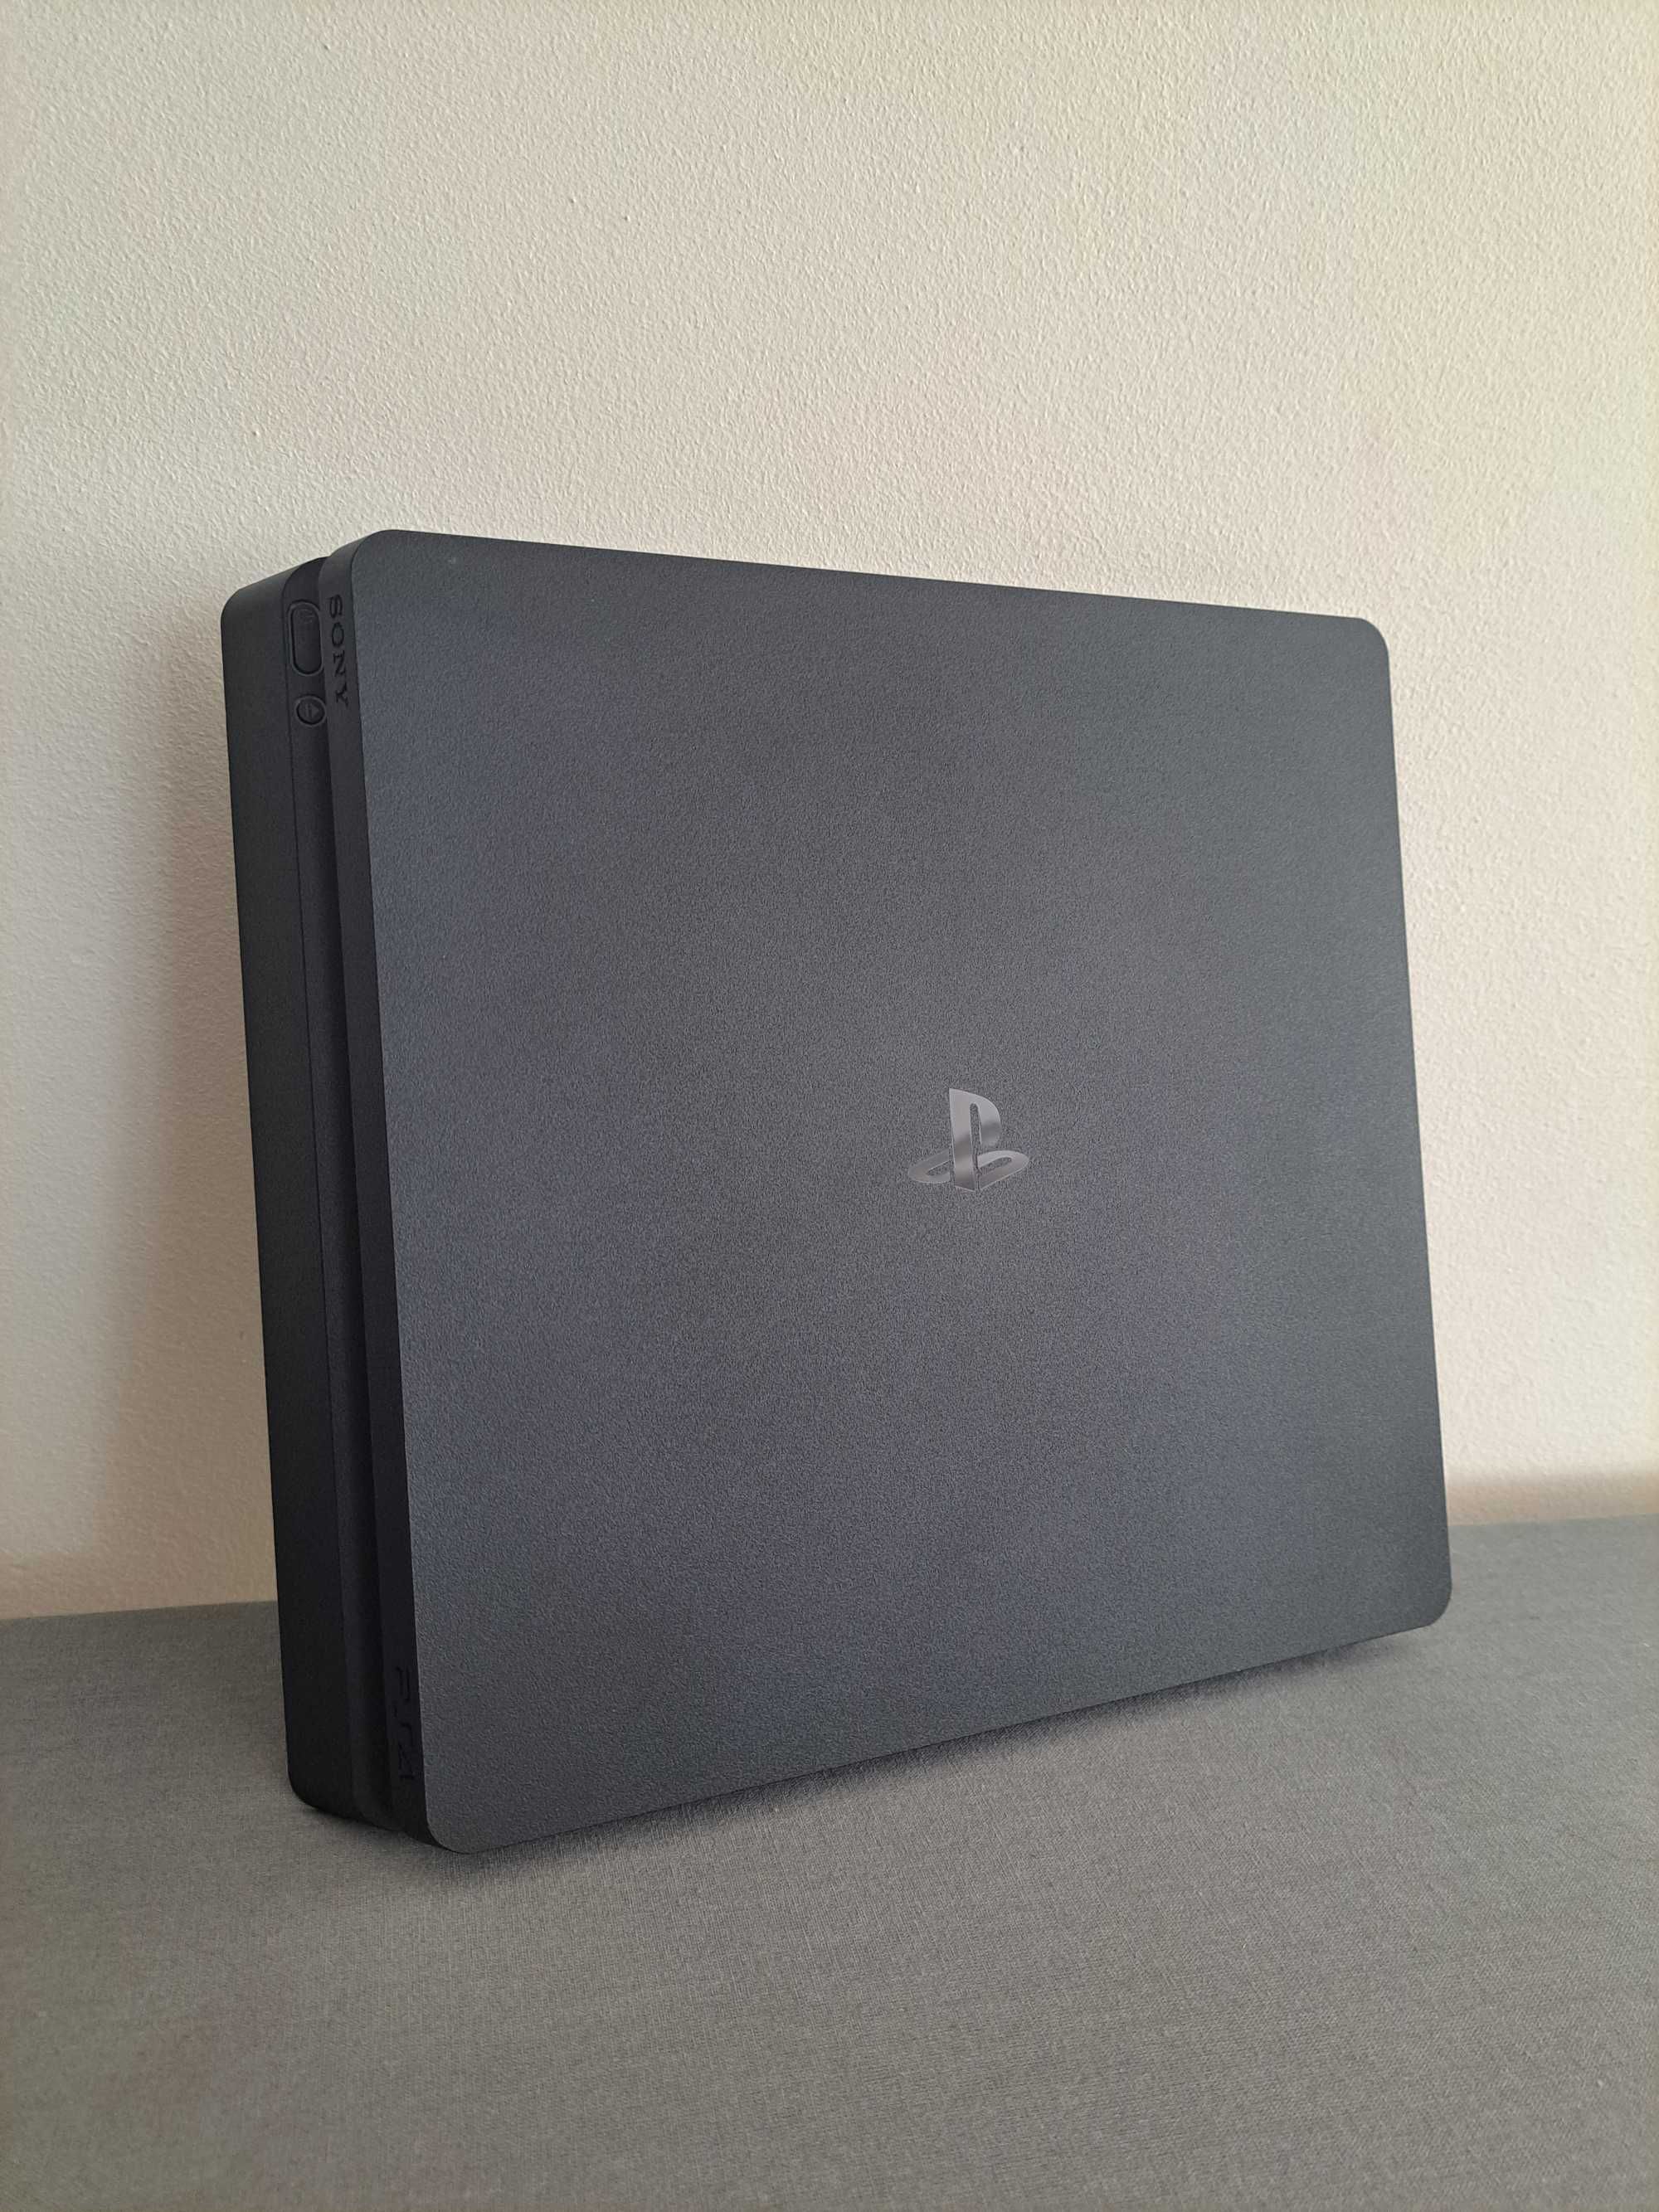 Konsola do gier Sony PlayStation 4 PS4 2 pady kontrolery 10 gier gry